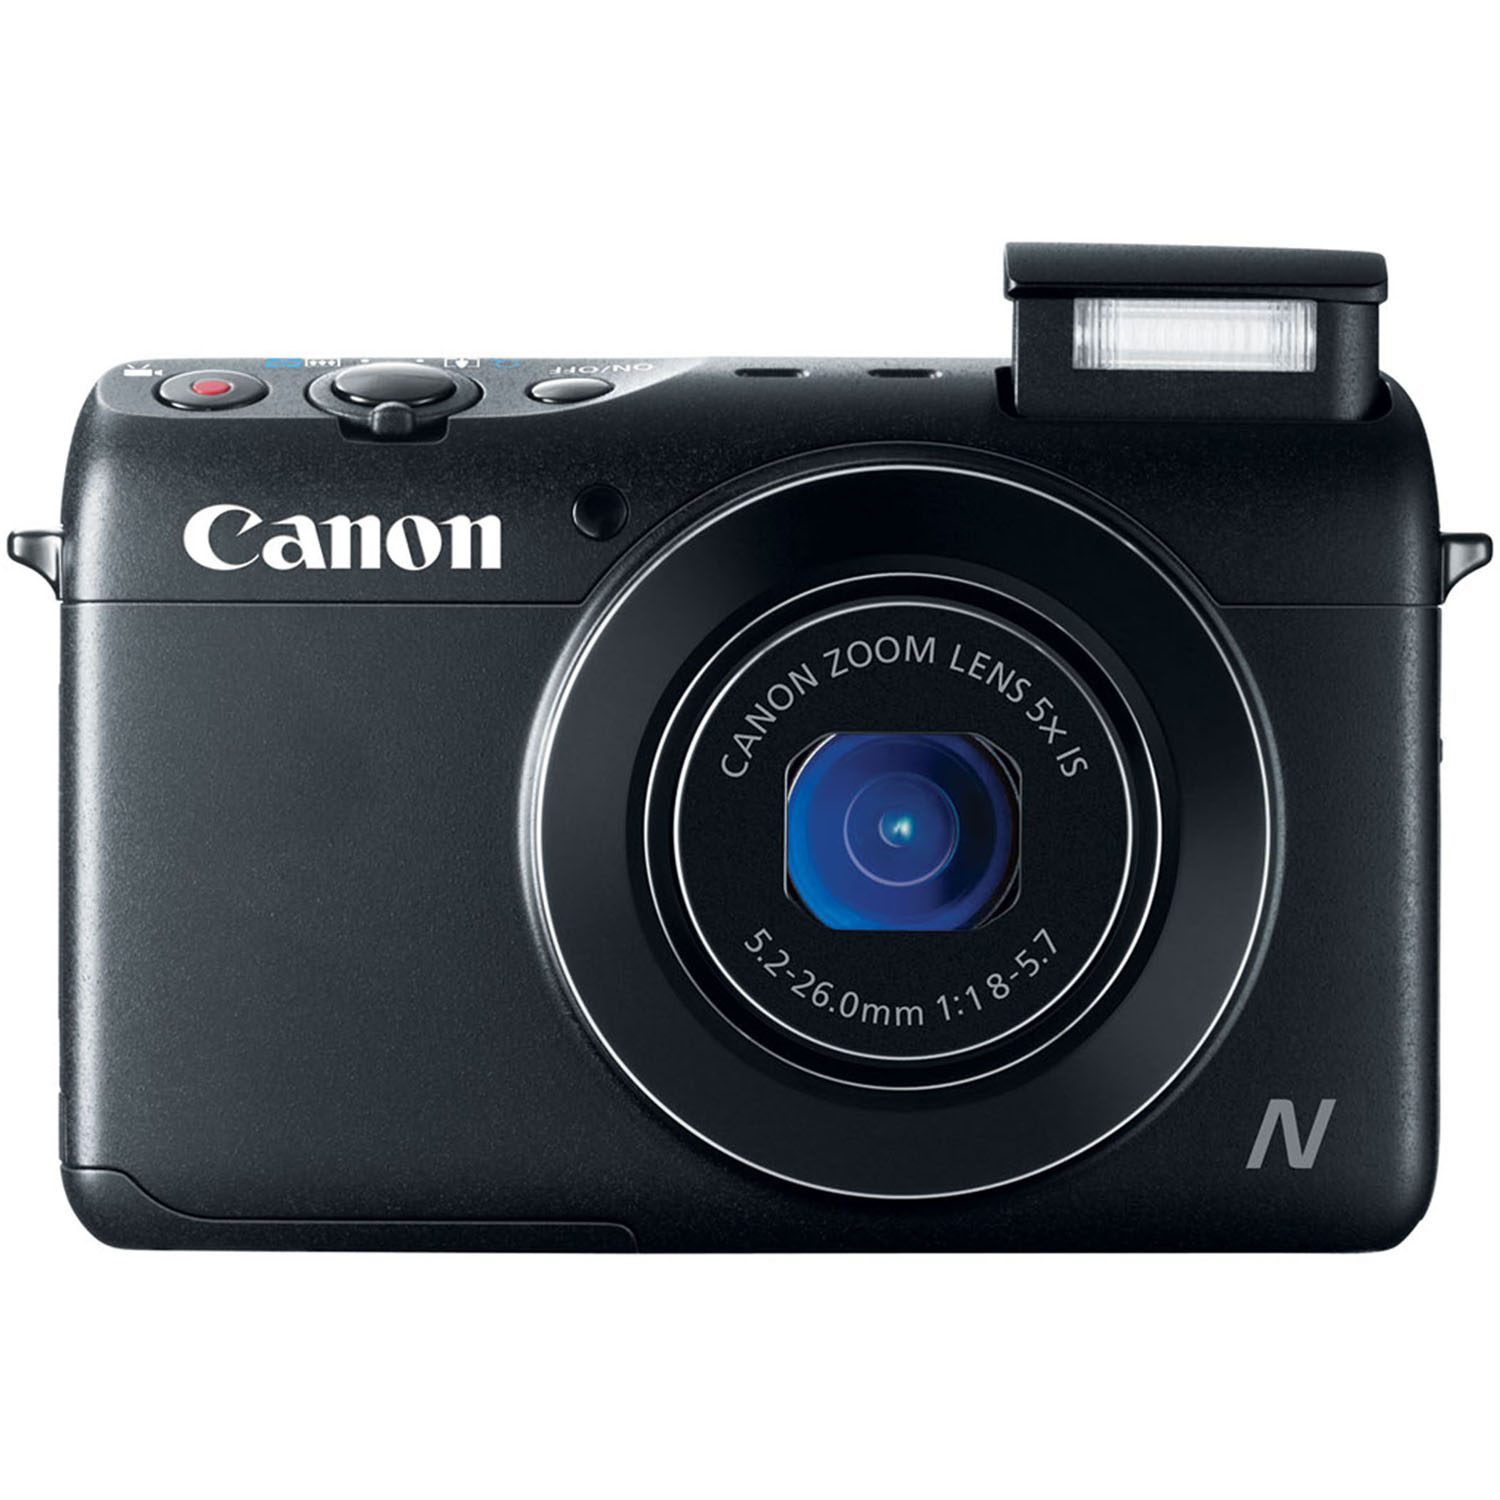 PowerShot N100 12.1MP Black Digital Camera with 5x Zoom